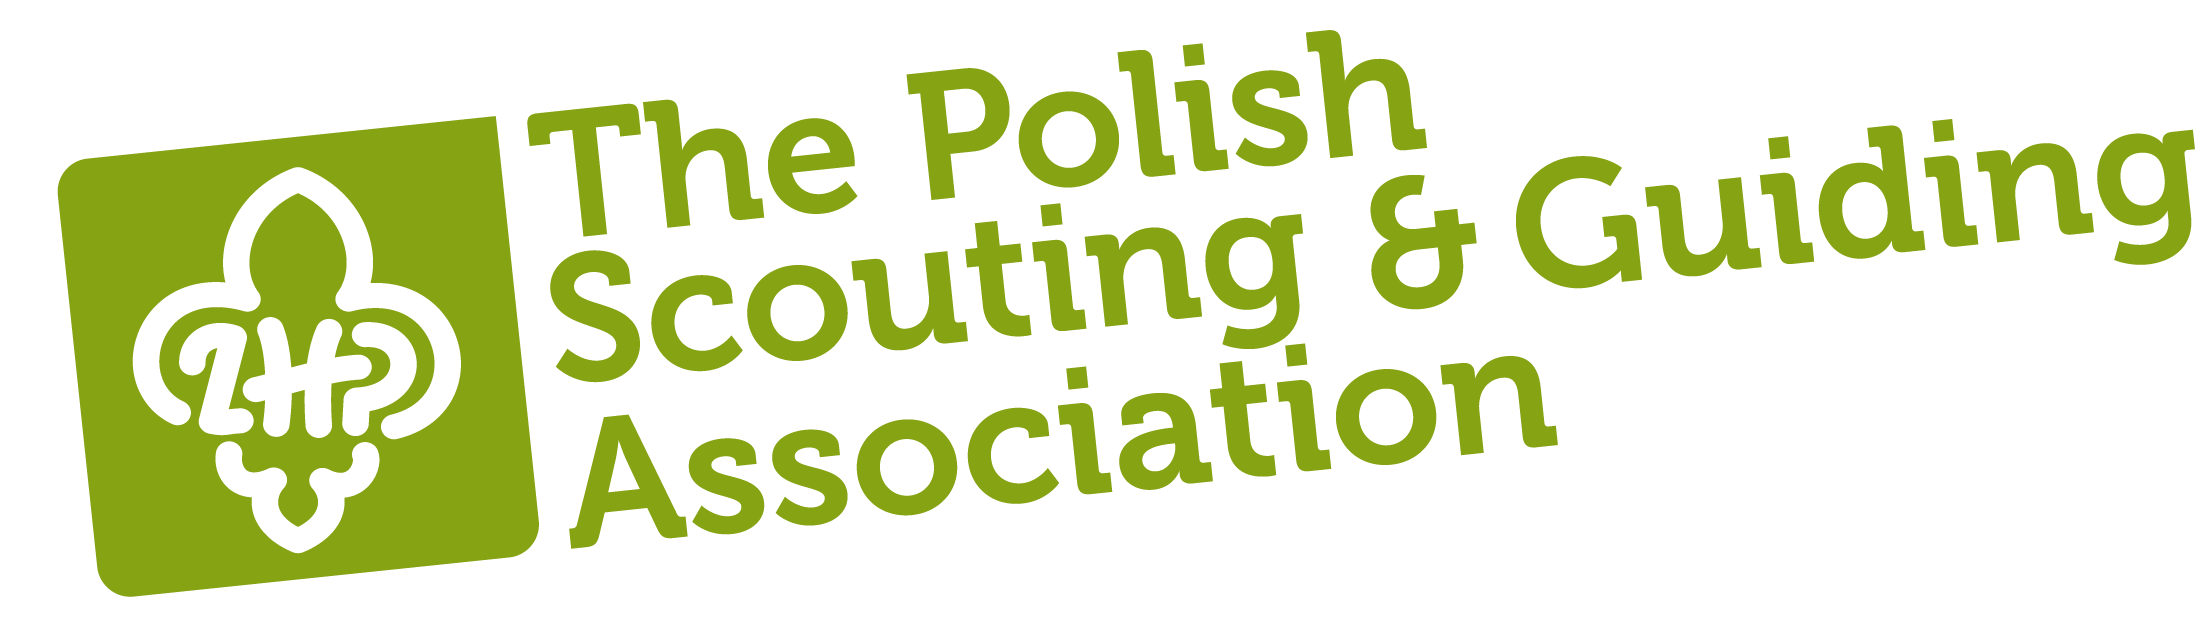 ZHP(폴란드 스카우트 및 가이드 연맹)
